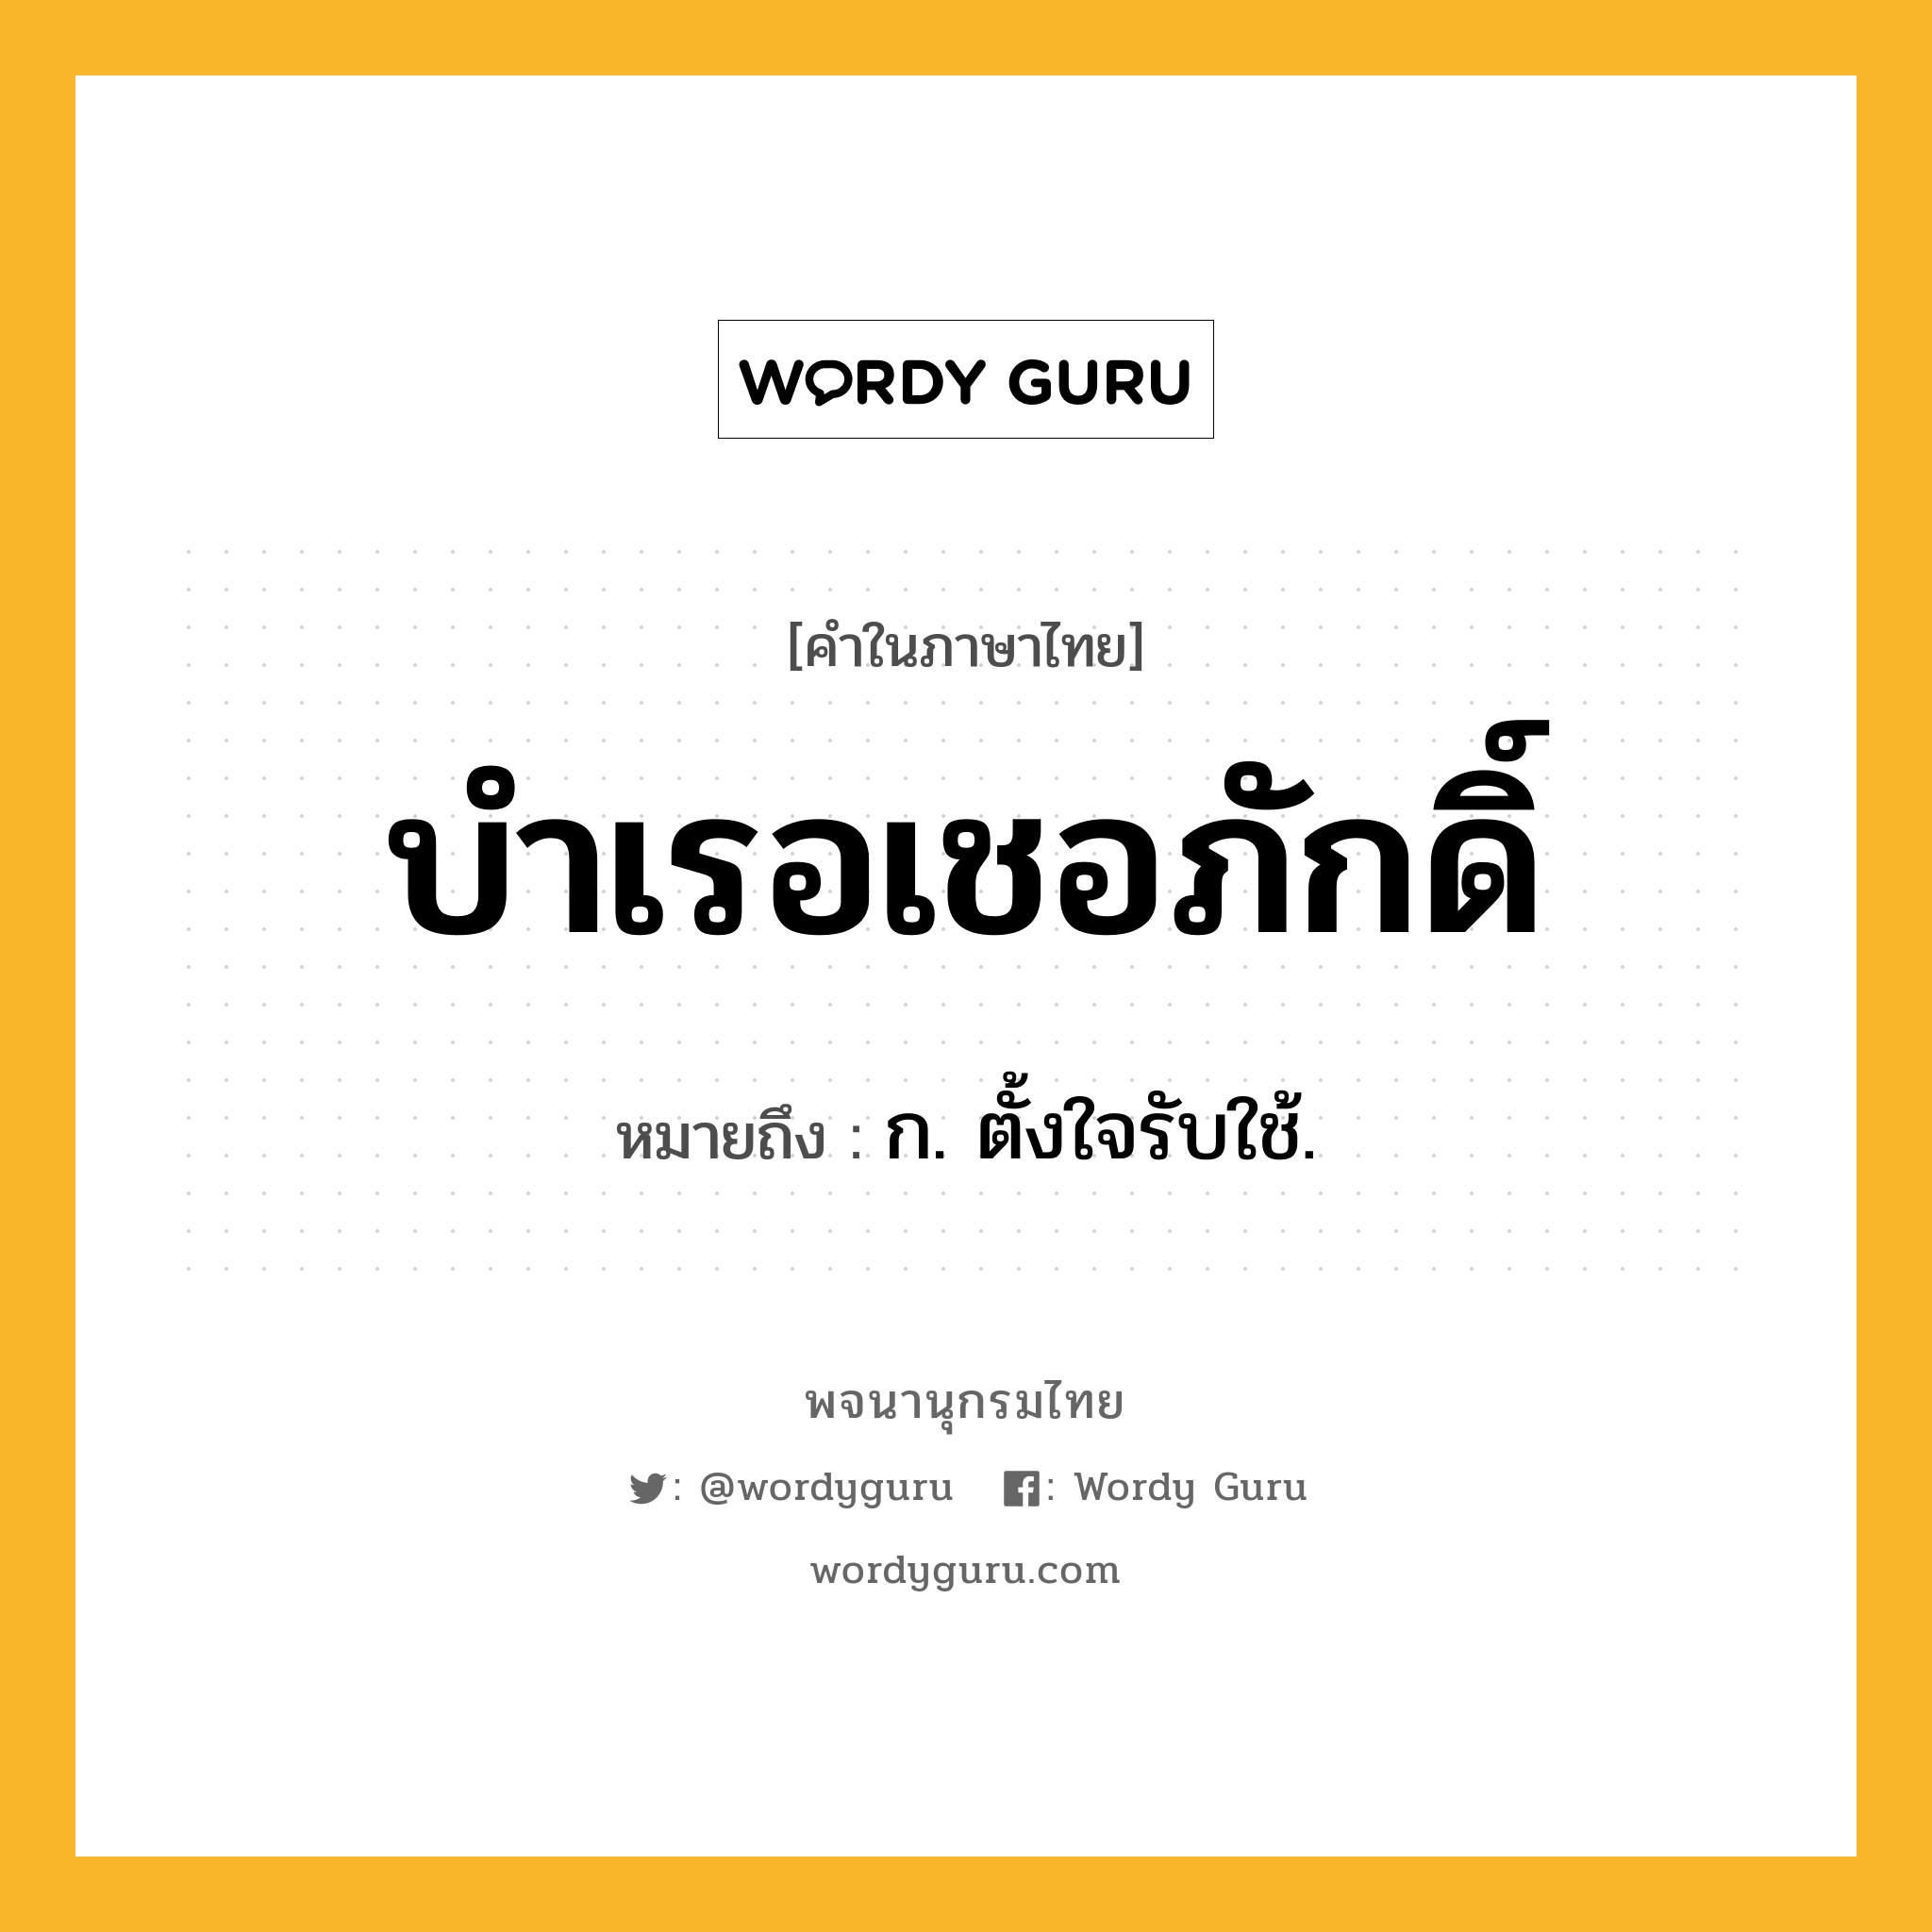 บำเรอเชอภักดิ์ หมายถึงอะไร?, คำในภาษาไทย บำเรอเชอภักดิ์ หมายถึง ก. ตั้งใจรับใช้.